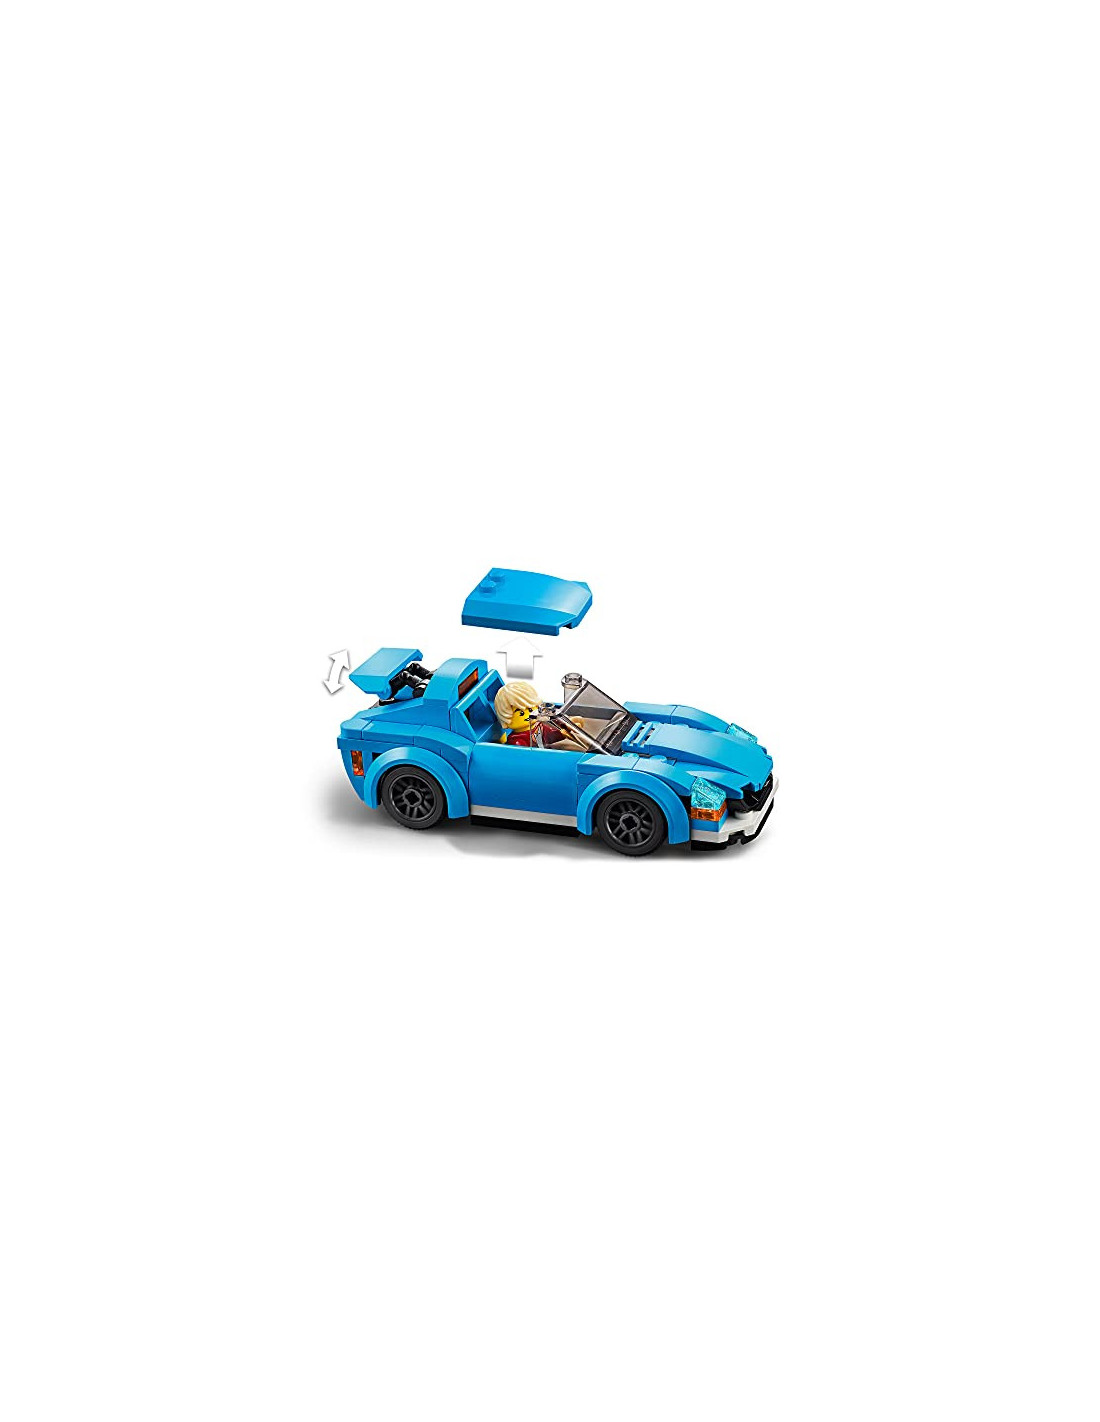 Lego city 60285 la voiture de sport avec toit amovible et